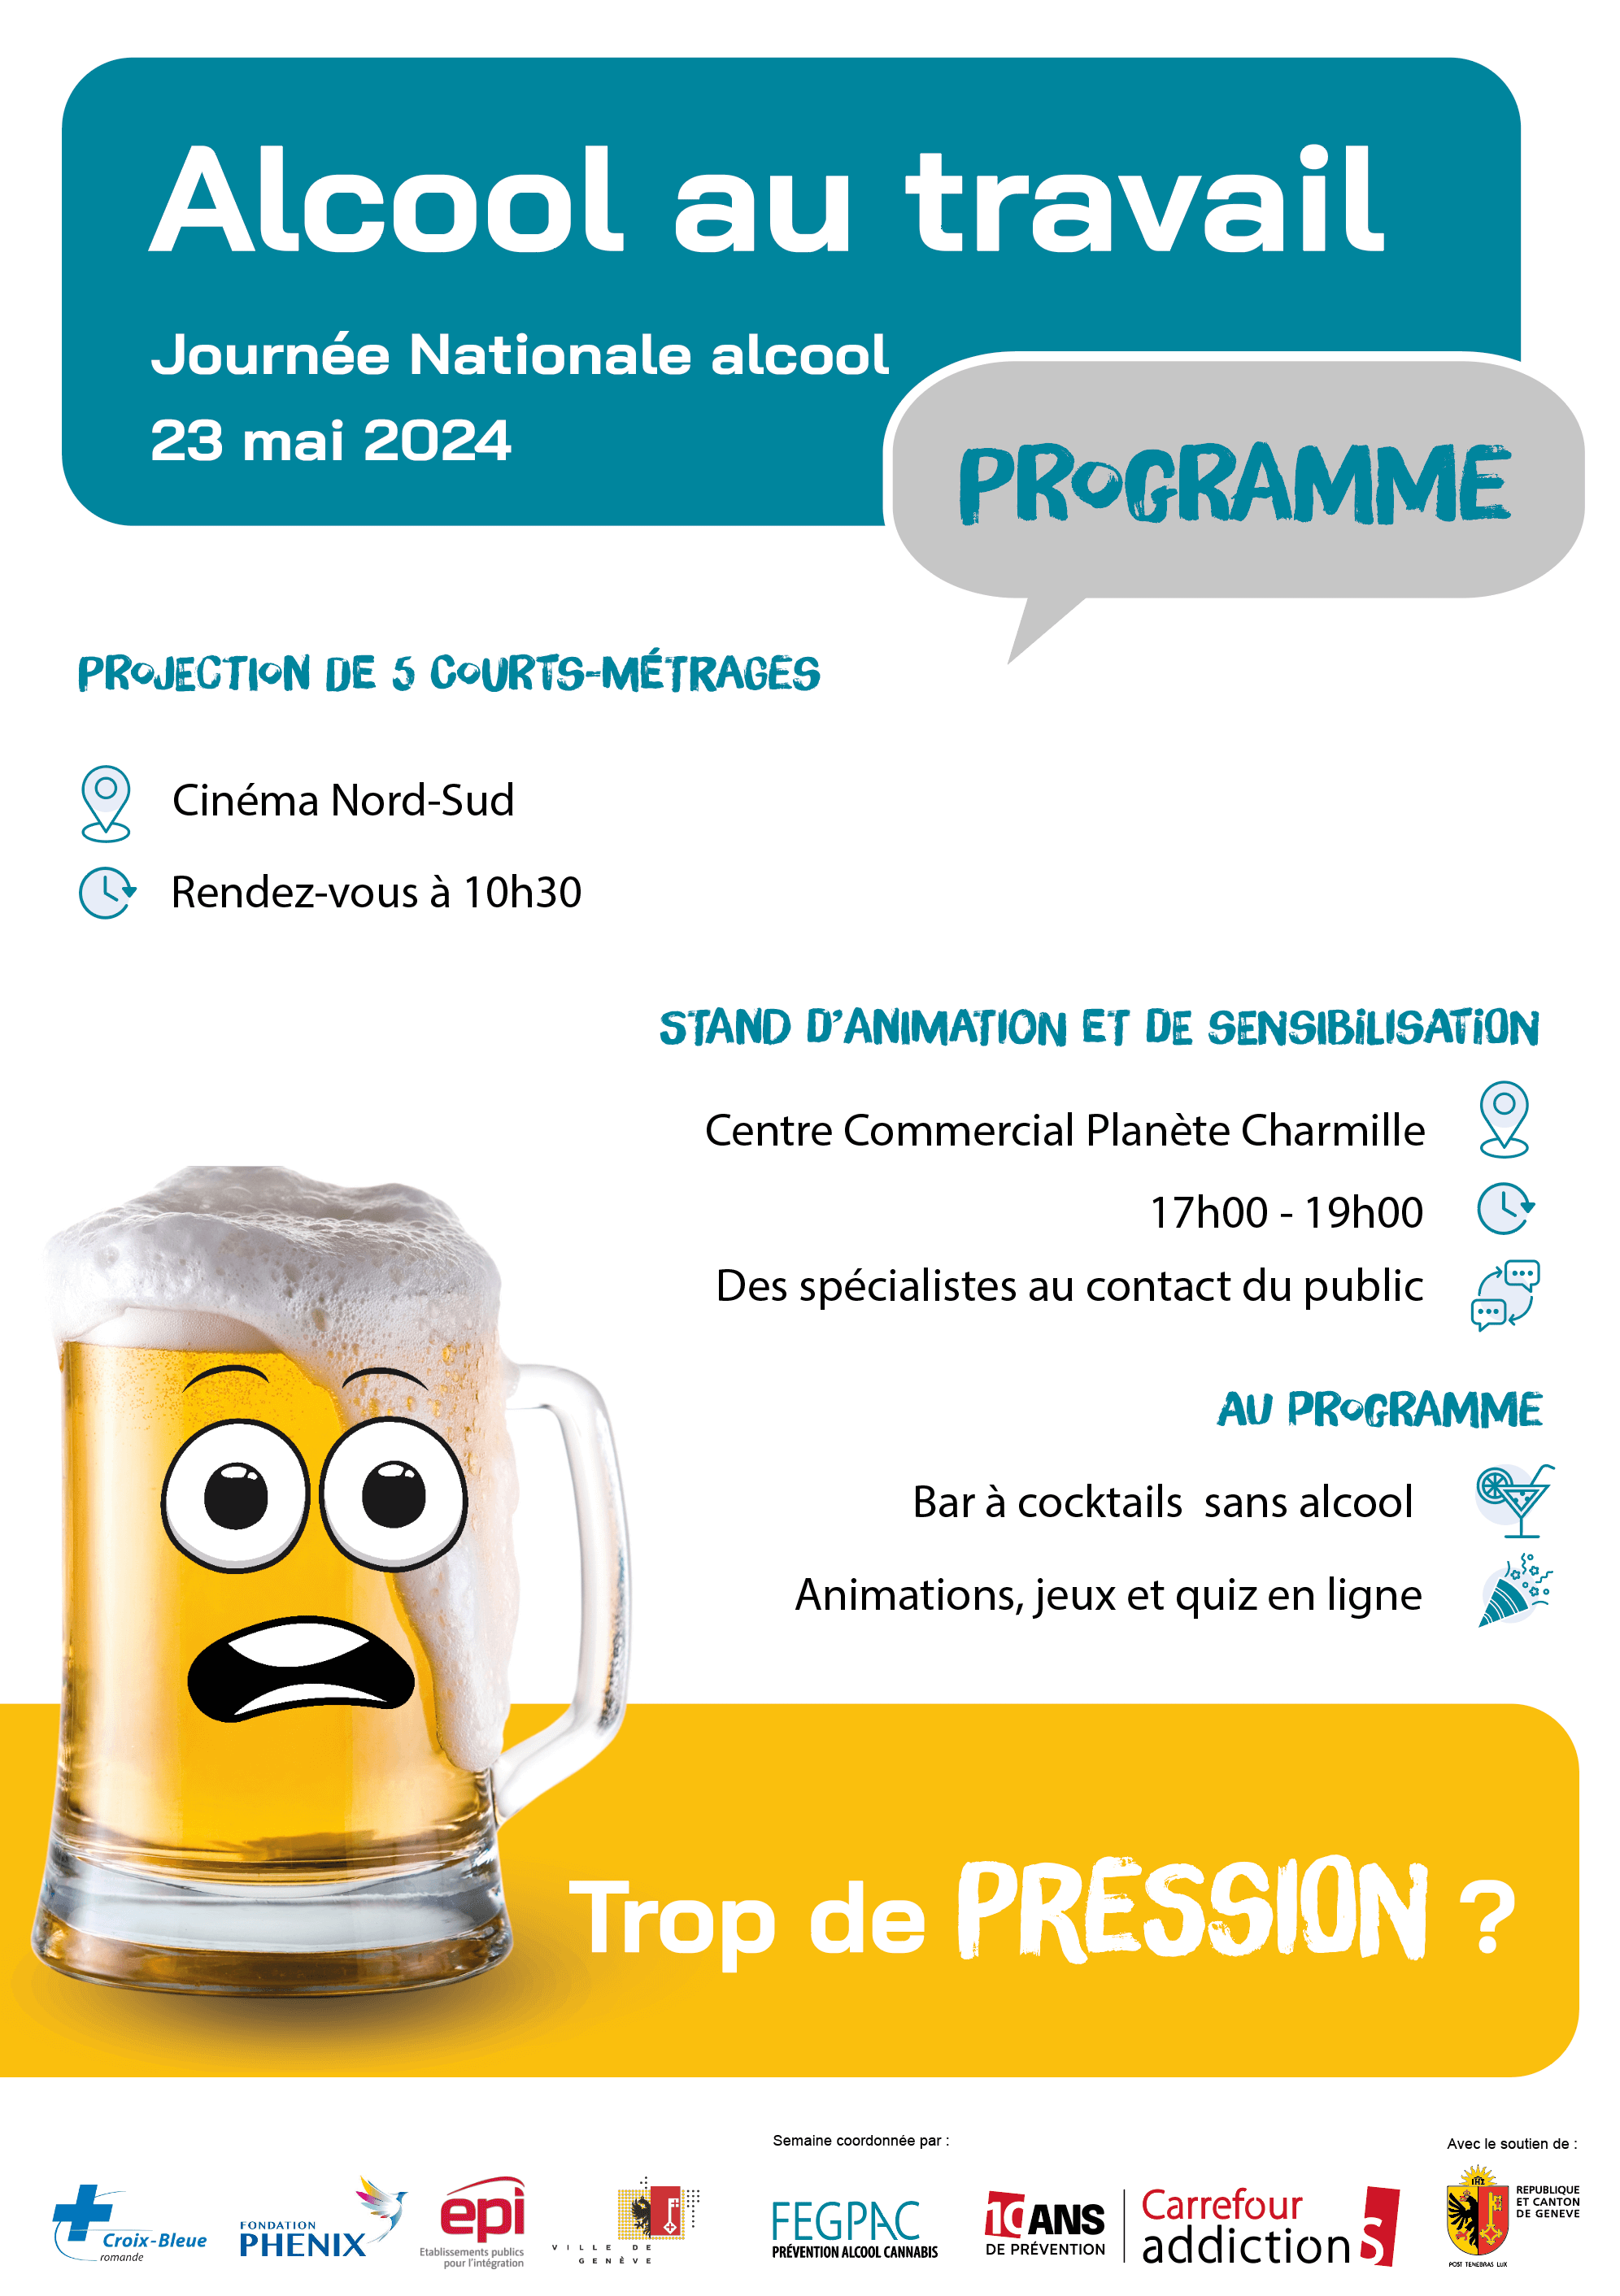 journee-alcool-2024-programme